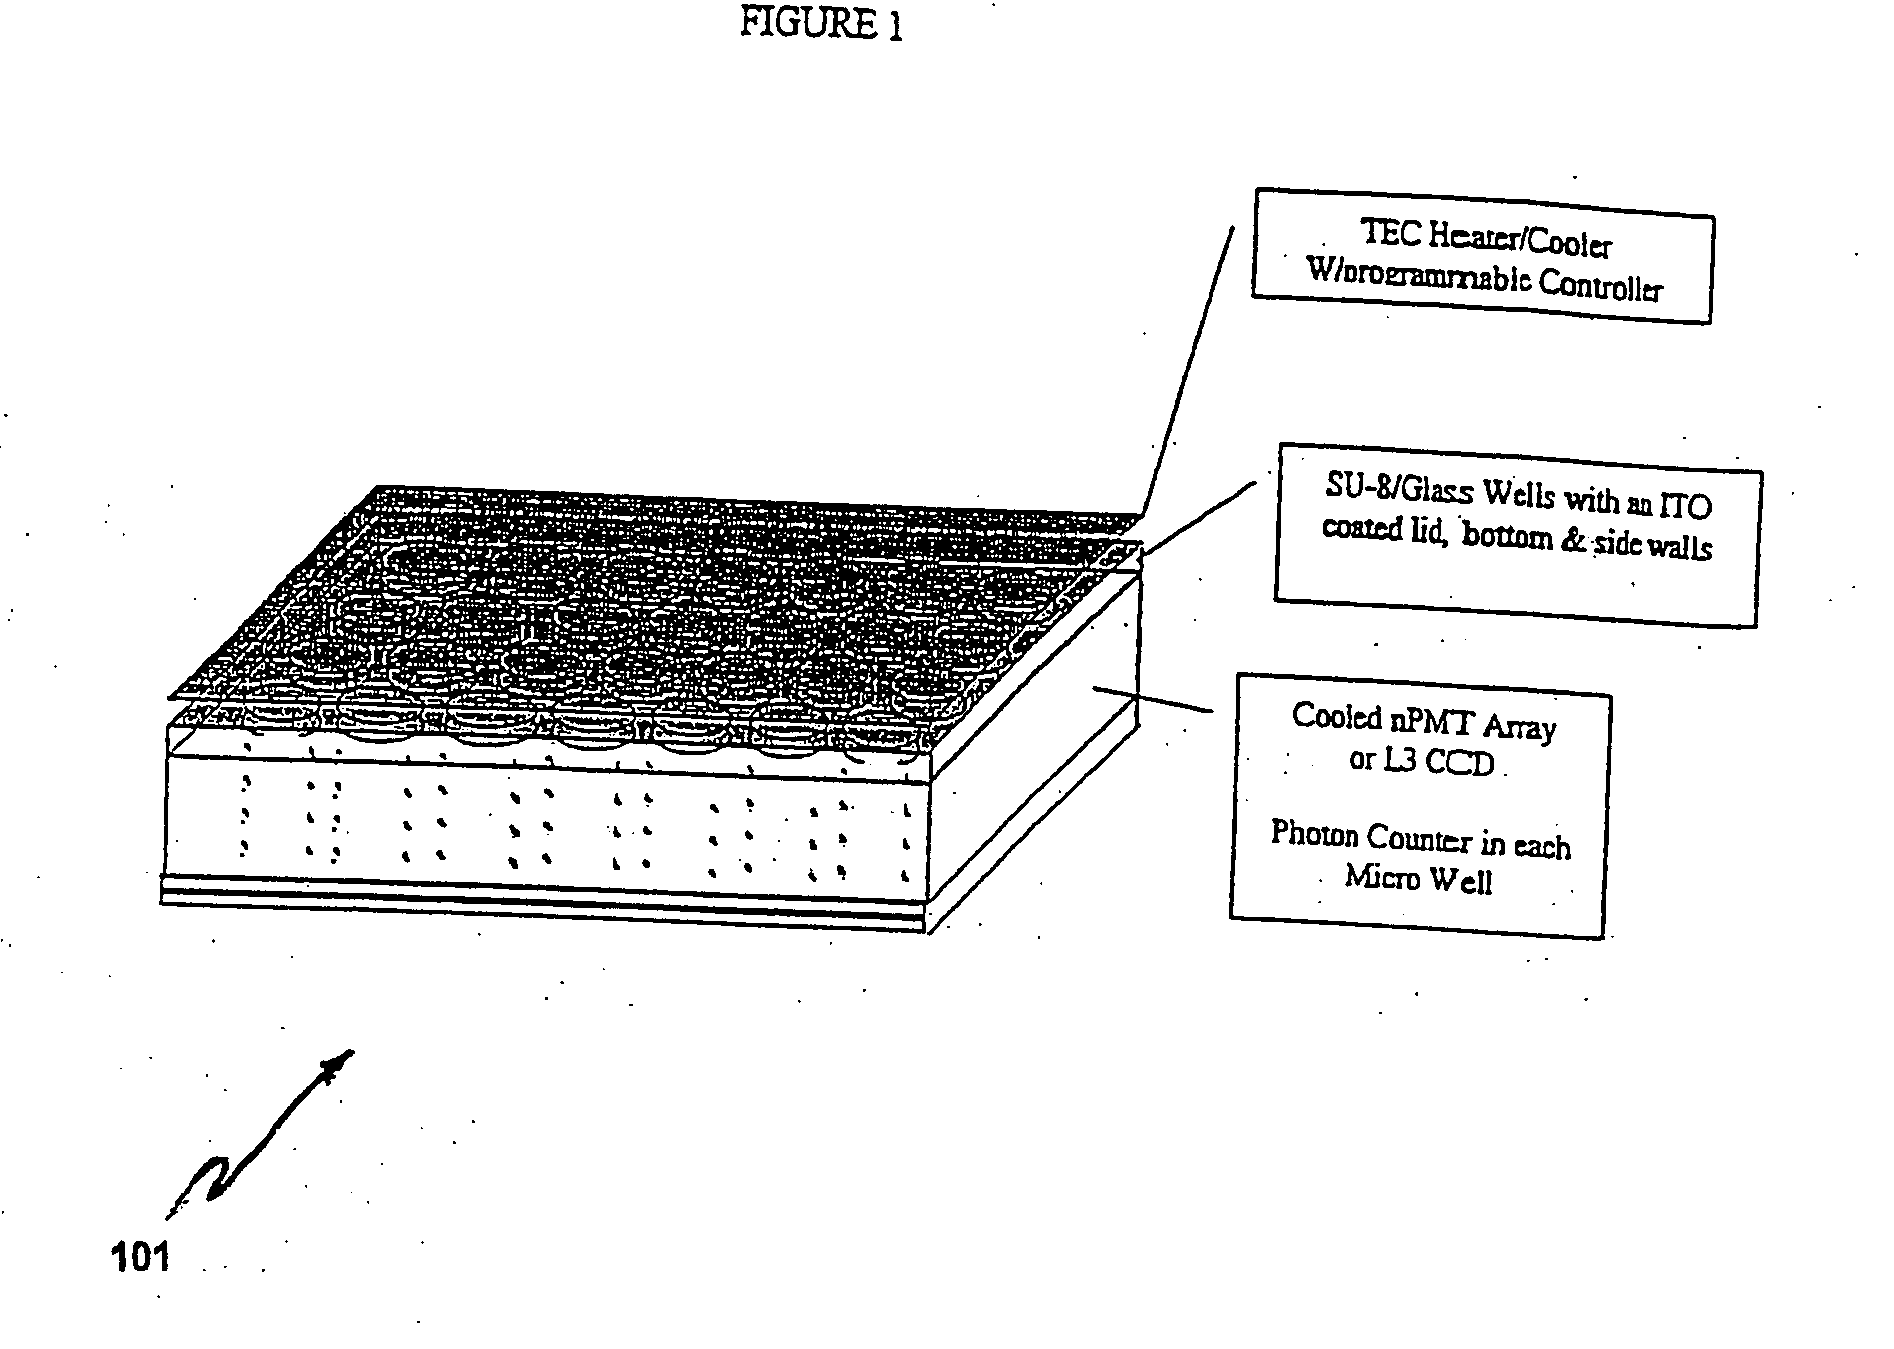 Methods of sealing micro wells